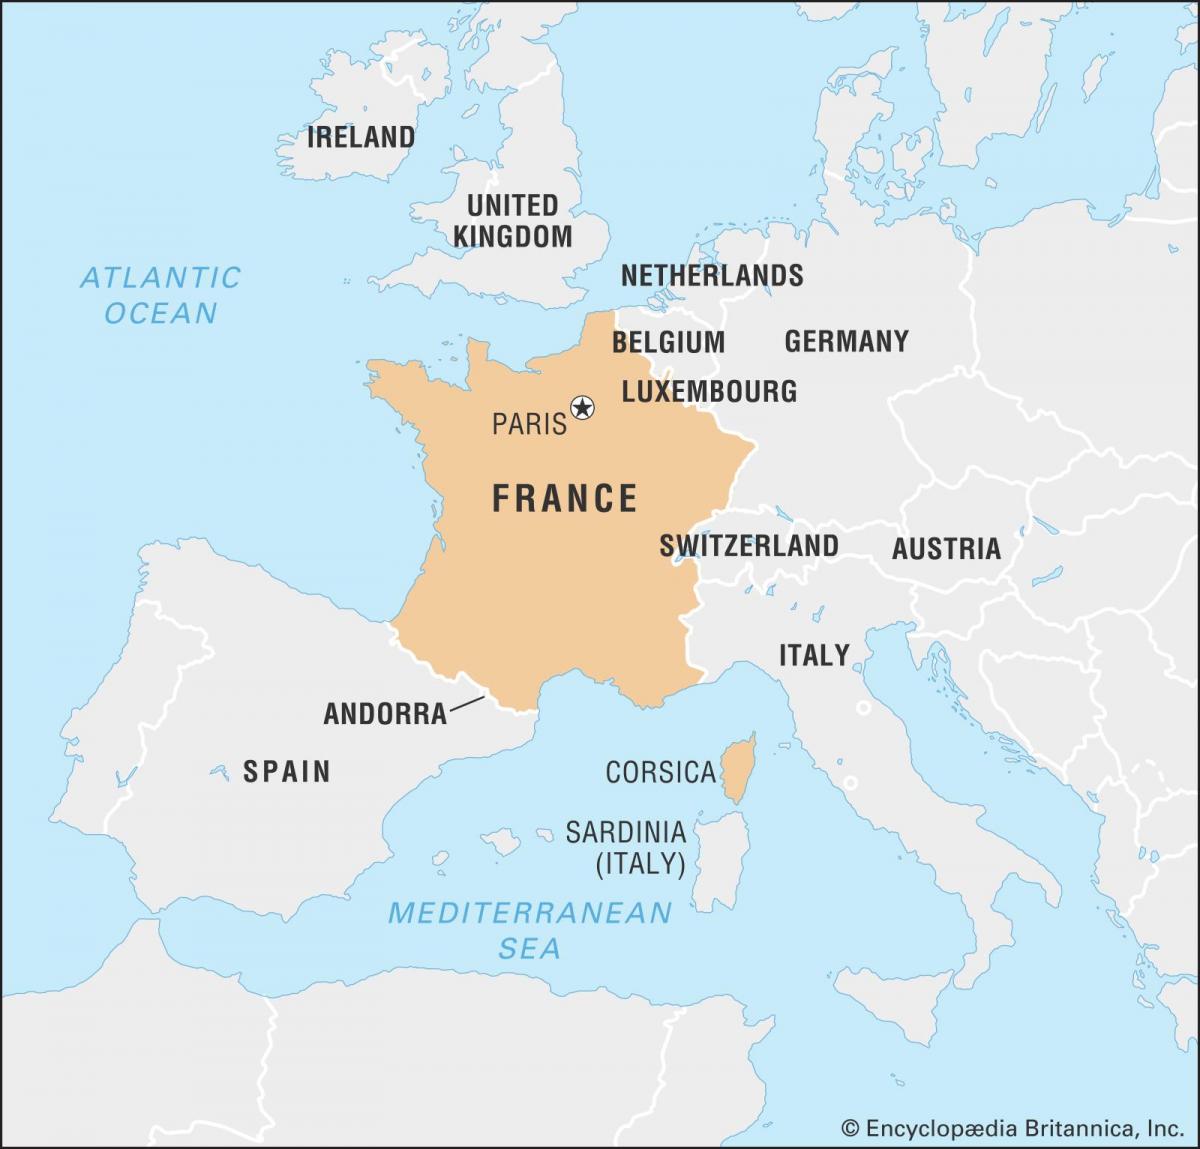 خريطة فرنسا والبلدان المجاورة